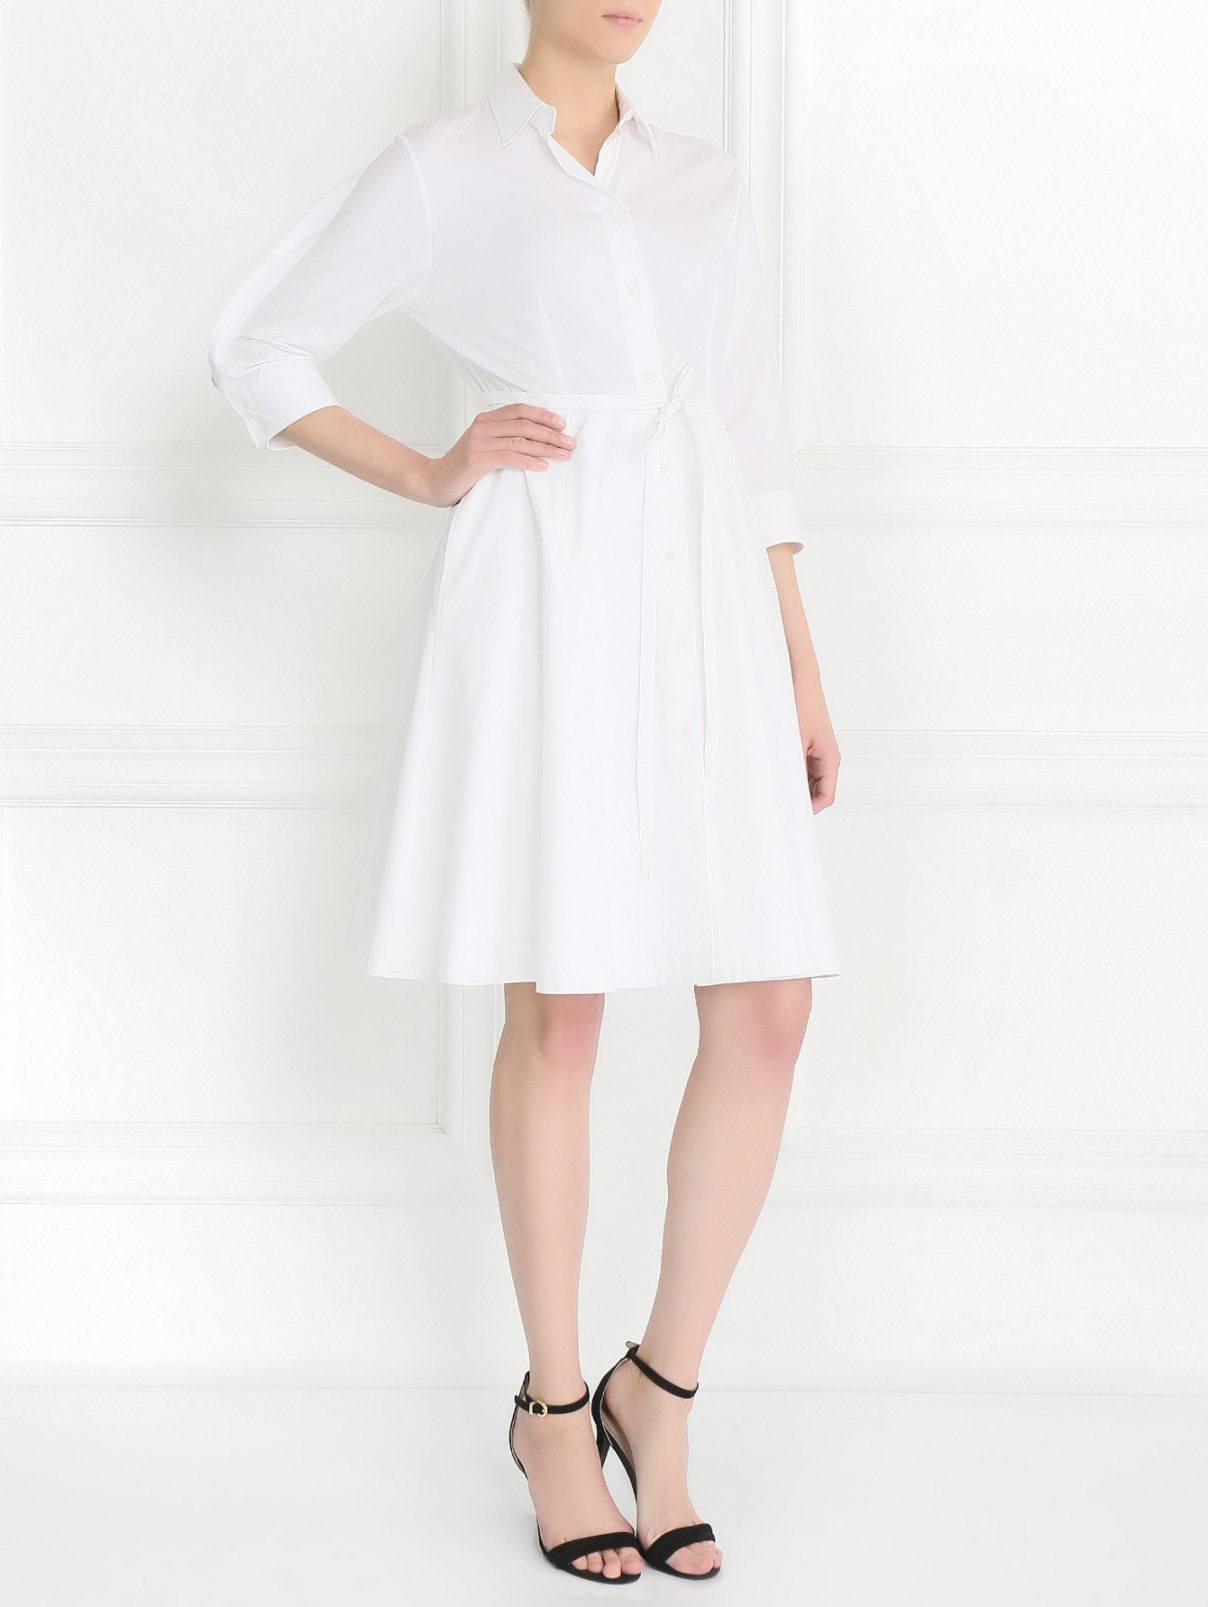 Платье из хлопка на пуговицах Jean Paul Gaultier  –  Модель Общий вид  – Цвет:  Белый